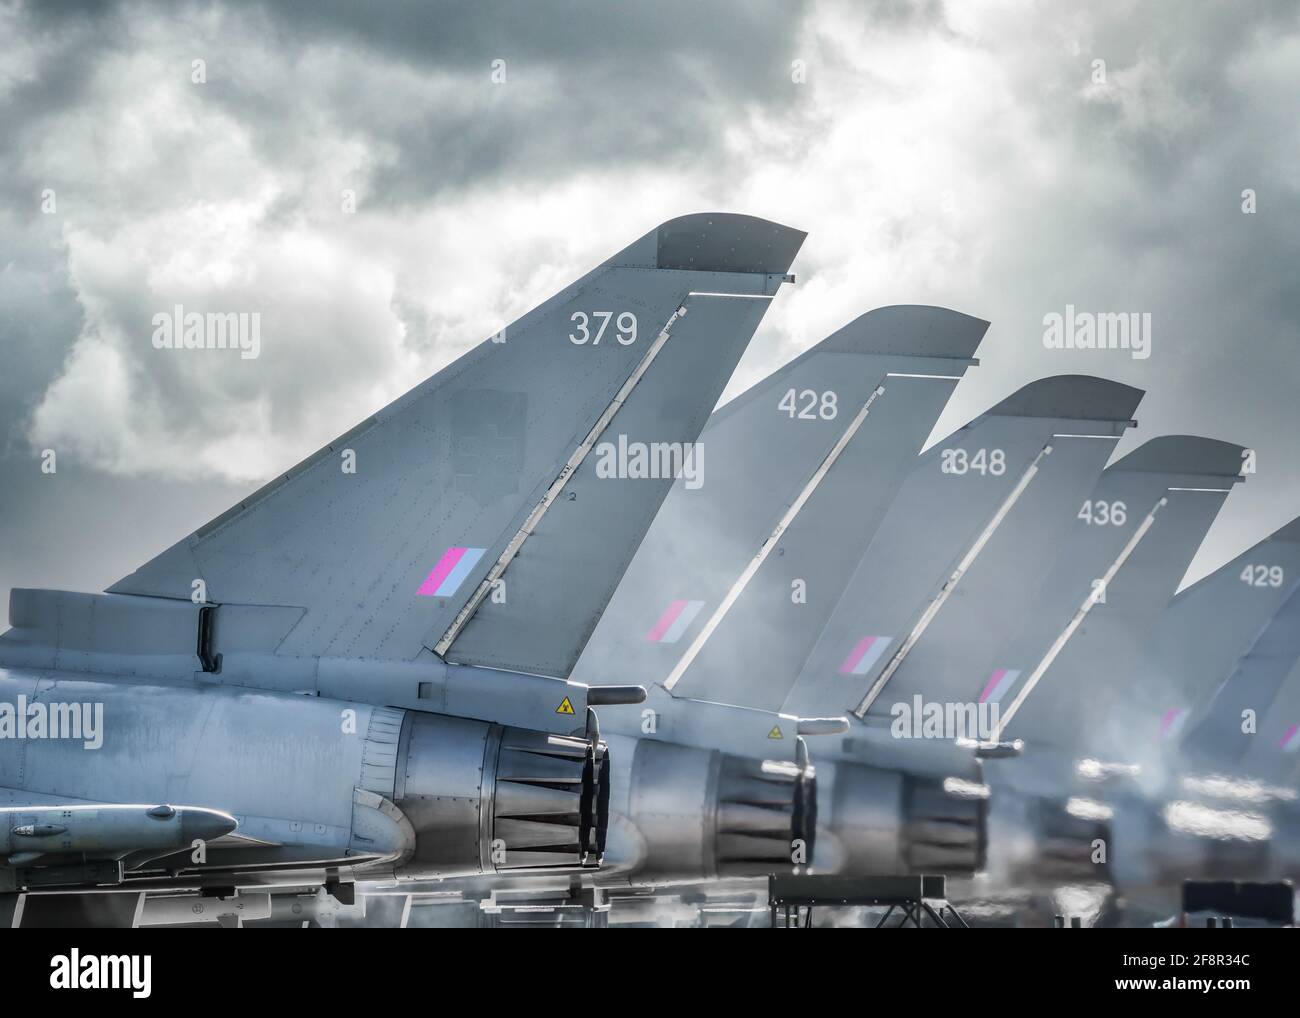 RAF Coningsby Modern Typhoon Eurofighter aerei da combattimento militari jet stazionate cinque in fila con motori che funzionano a caldo sfocati fila simmetrica Foto Stock